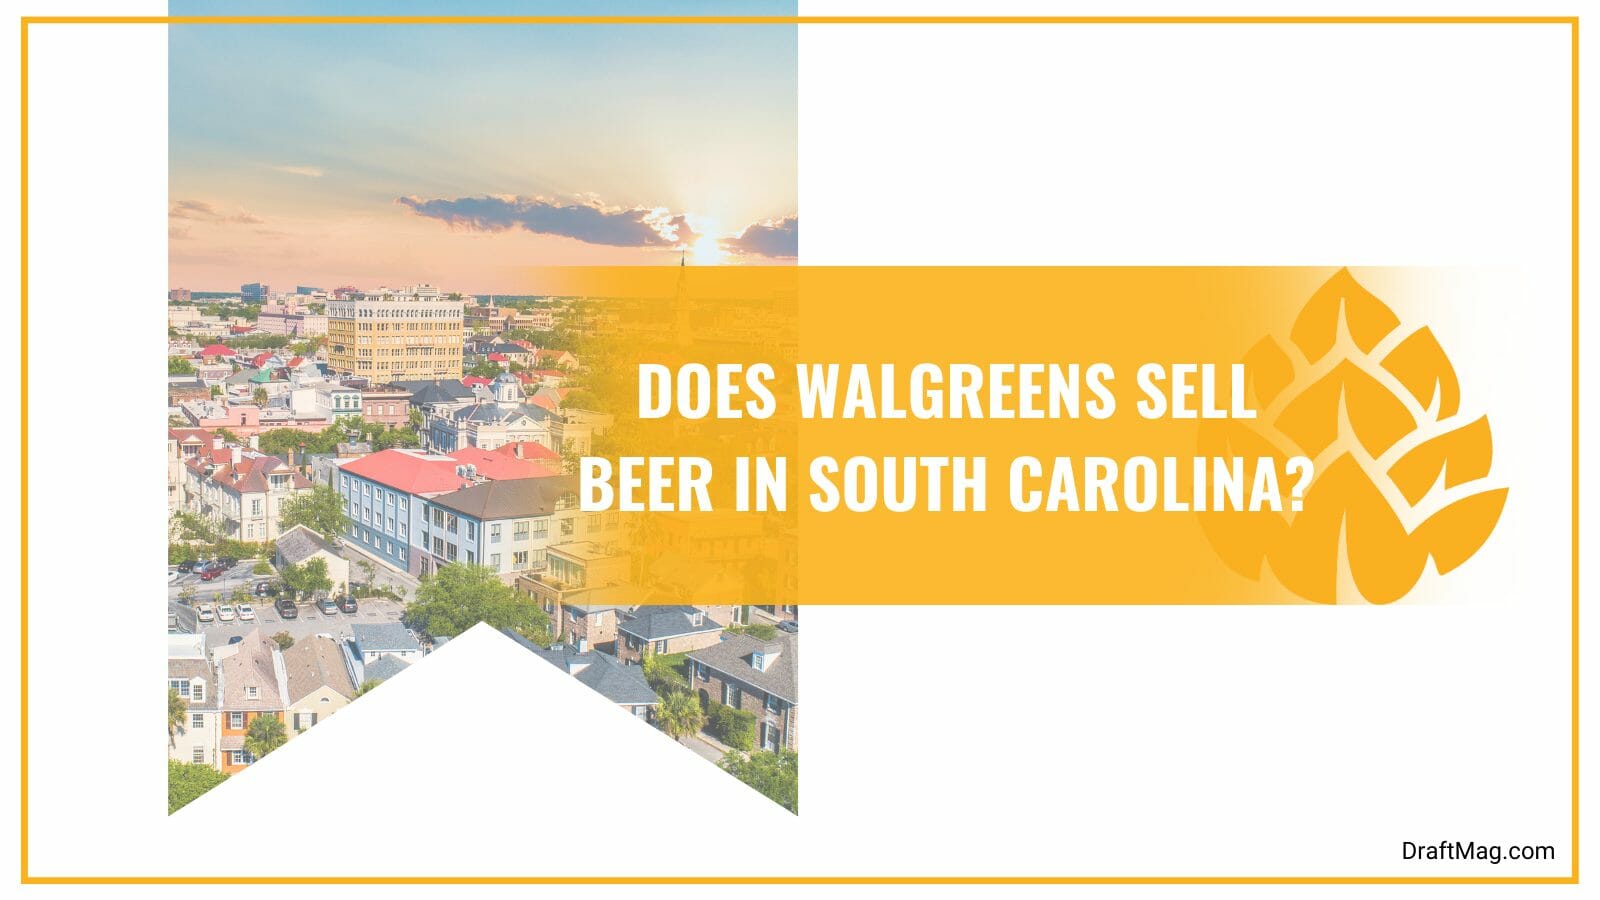 Walgreens sell beer in south carolina